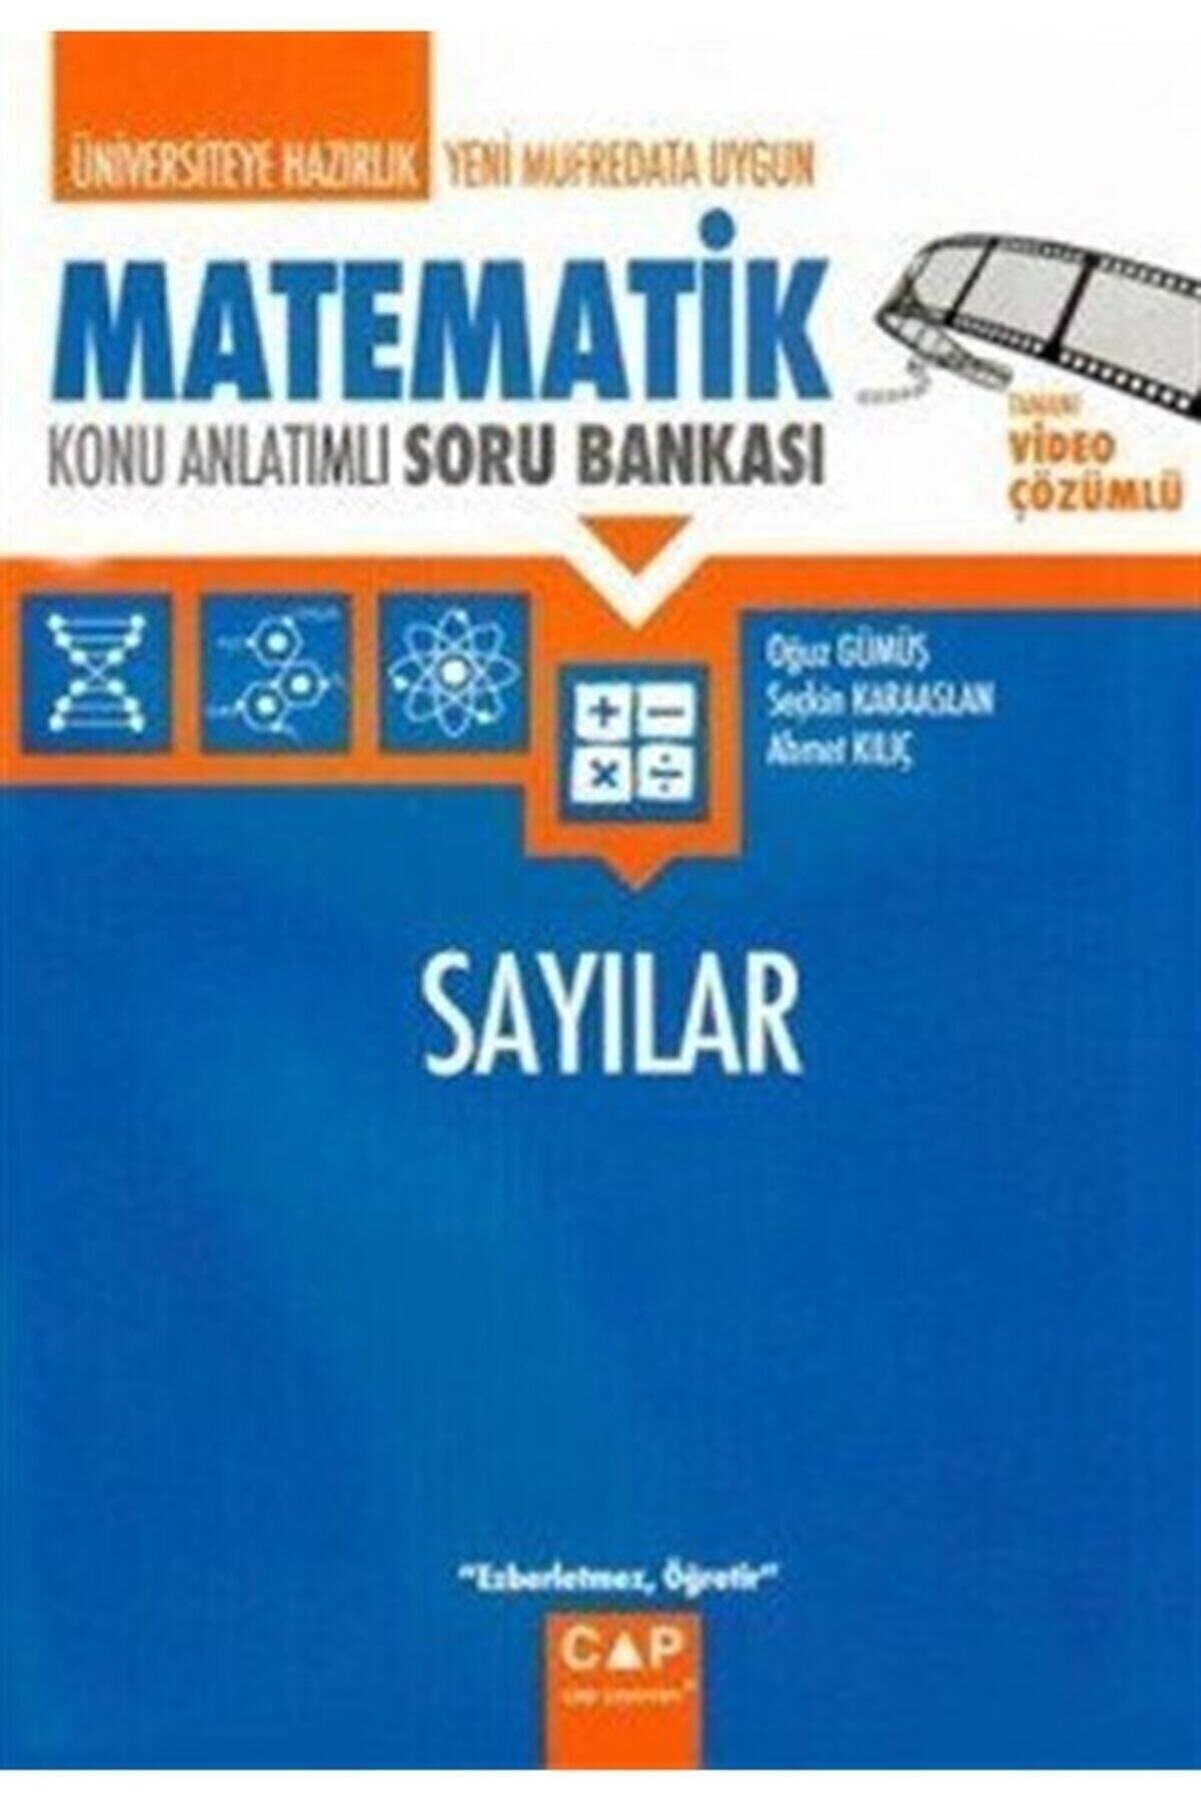 Çap Yayınları Üniversiteye Hazırlık Matematik Sayılar Konu Anlatımlı Soru Bankası